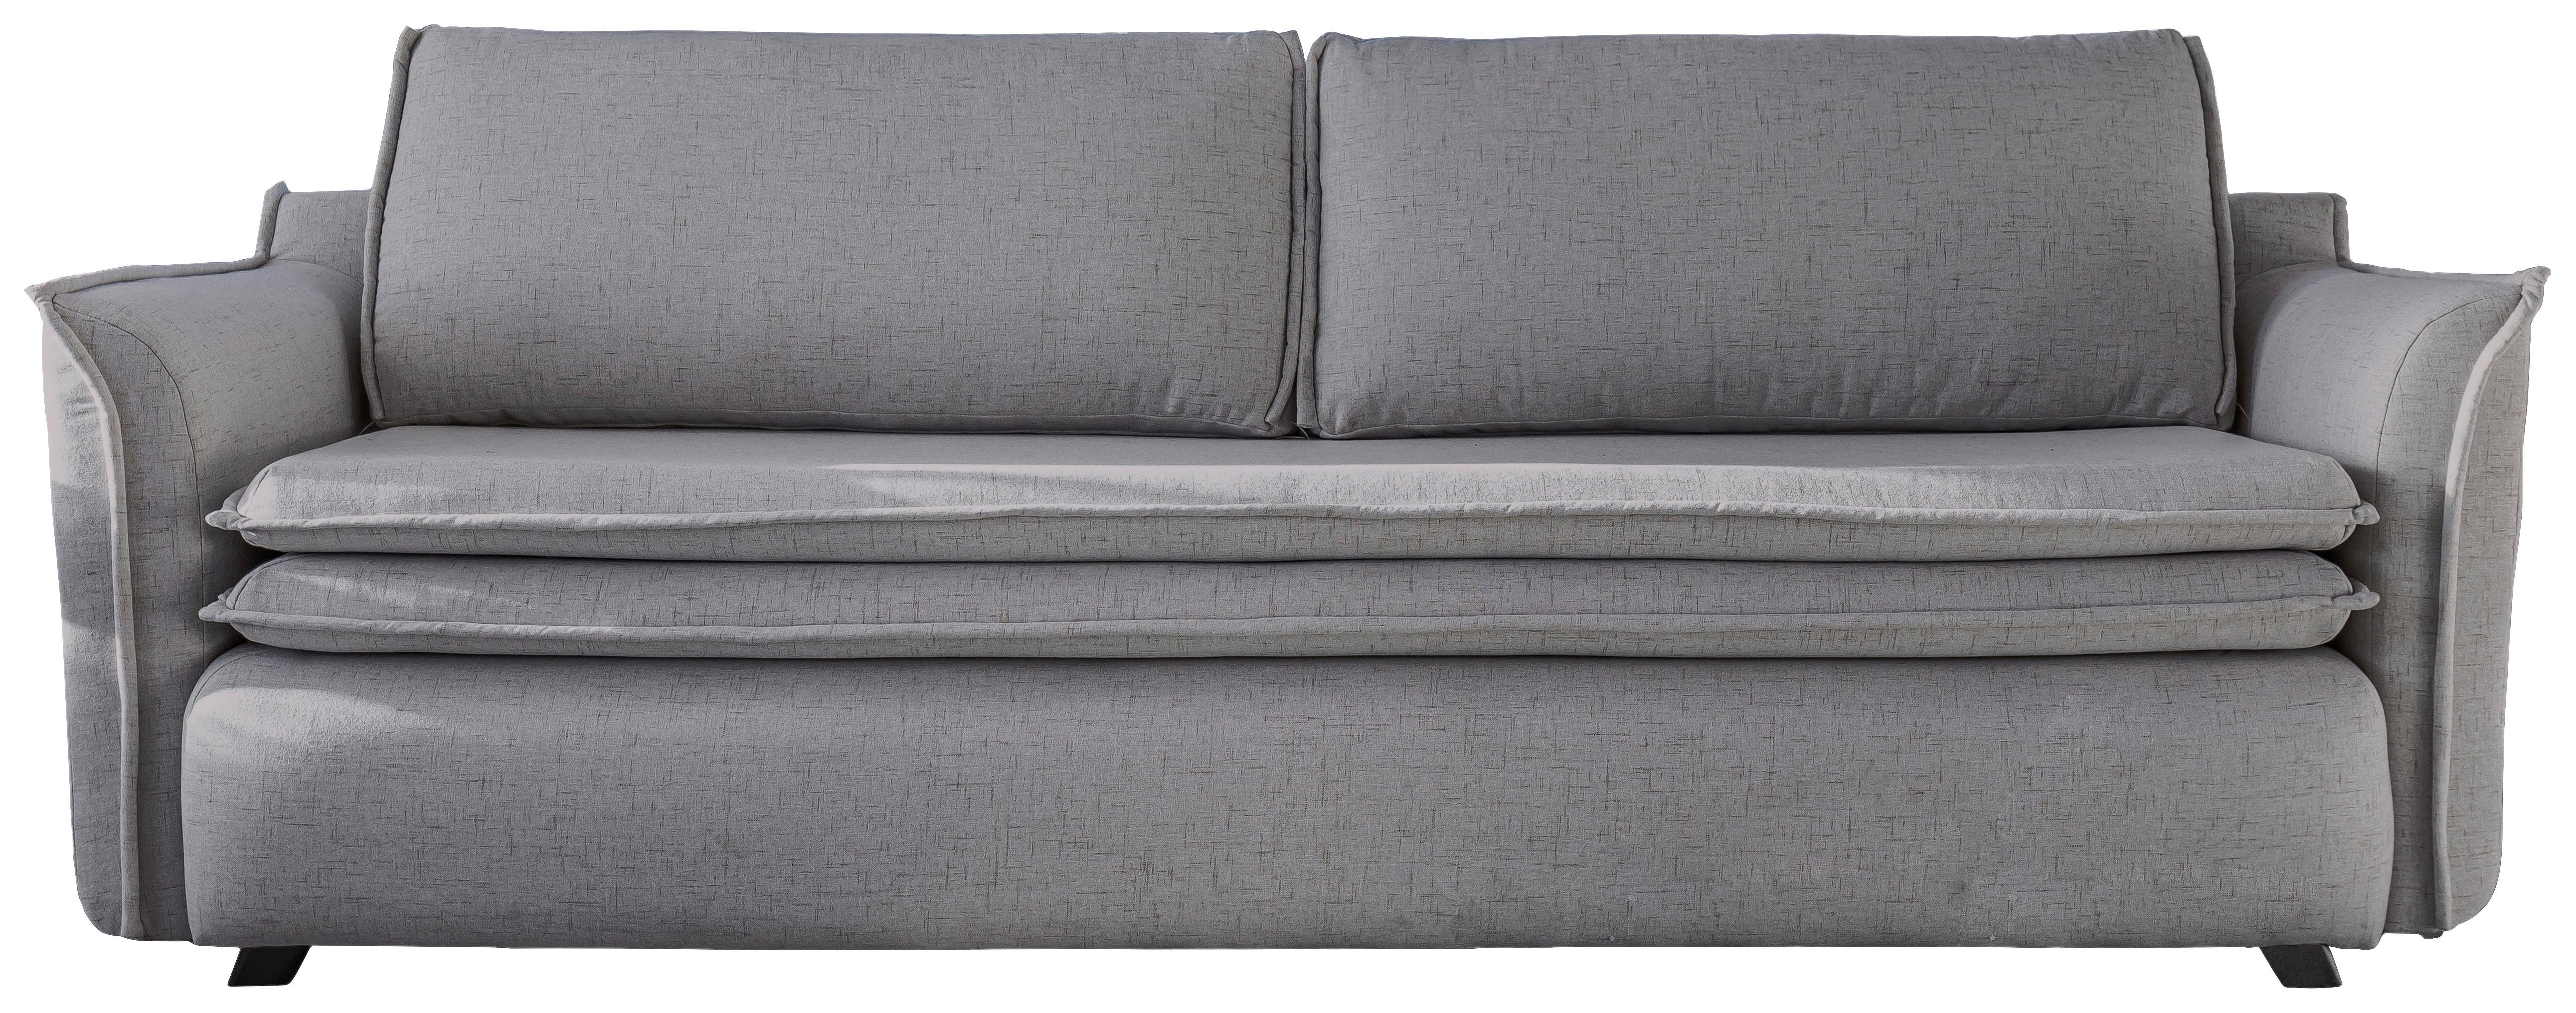 3-Sitzer-Sofa mit Schlaffunkt. und Bettkasten Charming Charlie - Grau, Basics (225/85/90cm) - MID.YOU